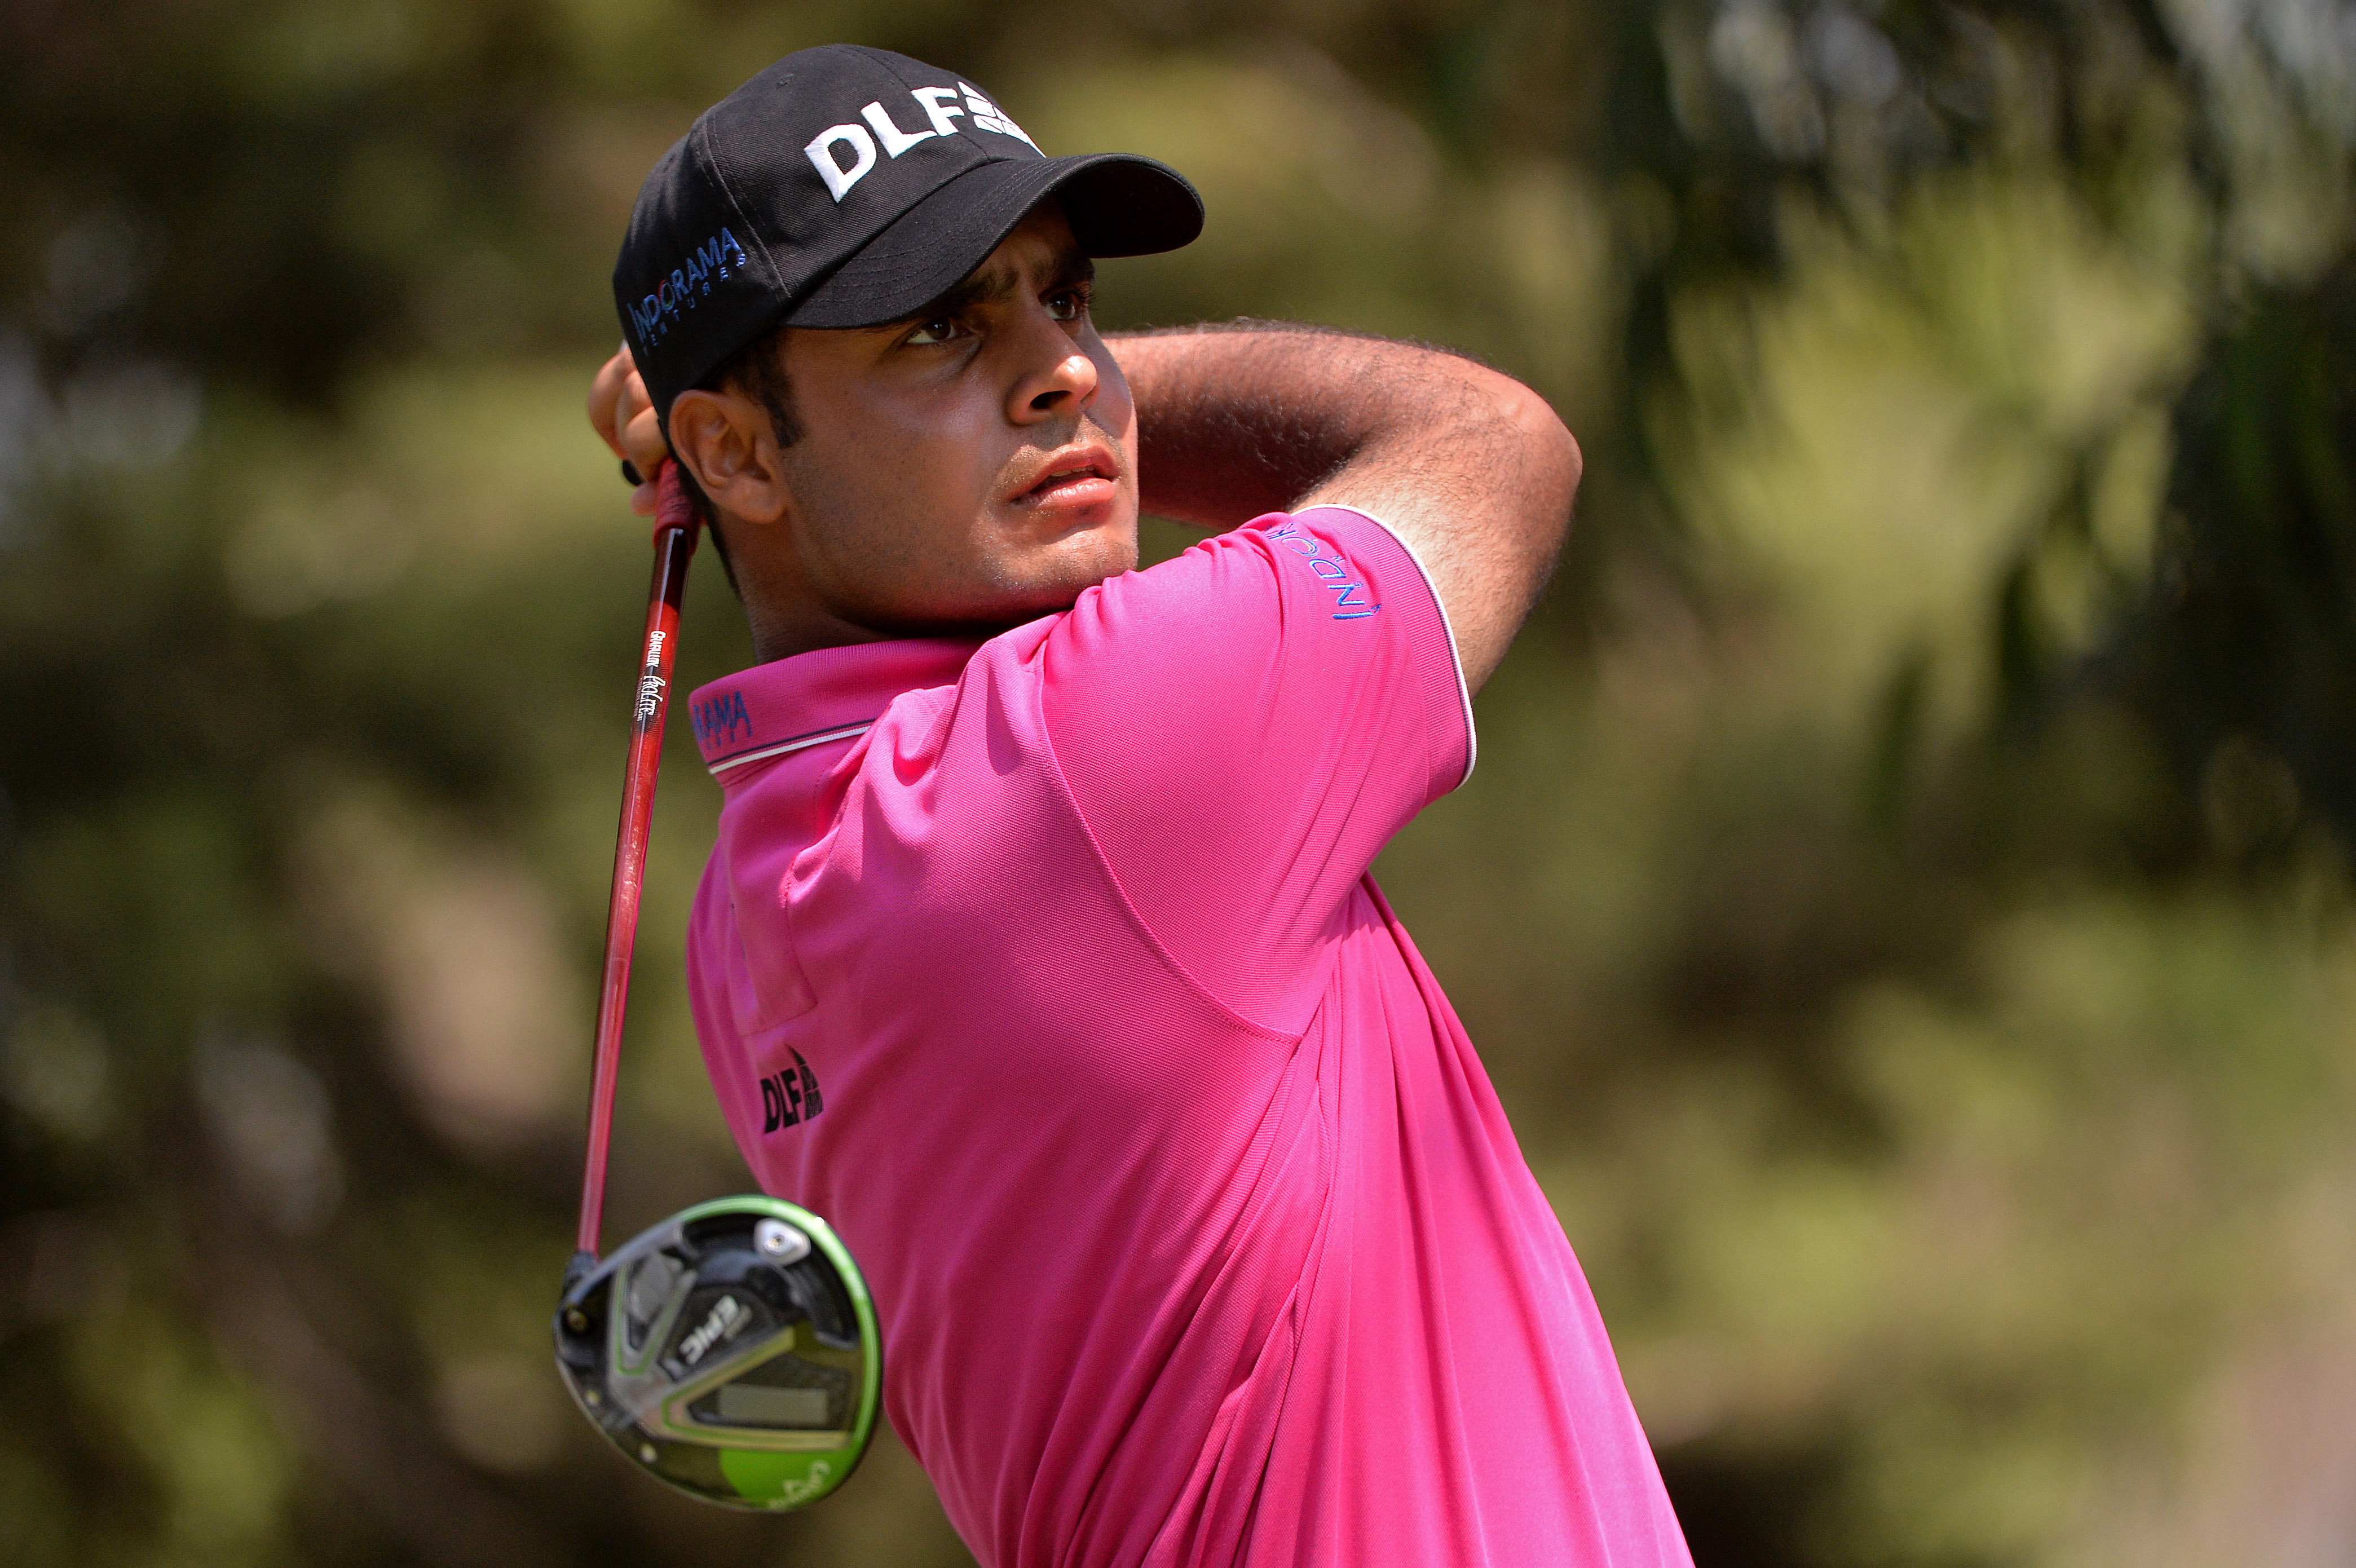 Golf: Shubhankar shows potential despite faltering at final hurdle